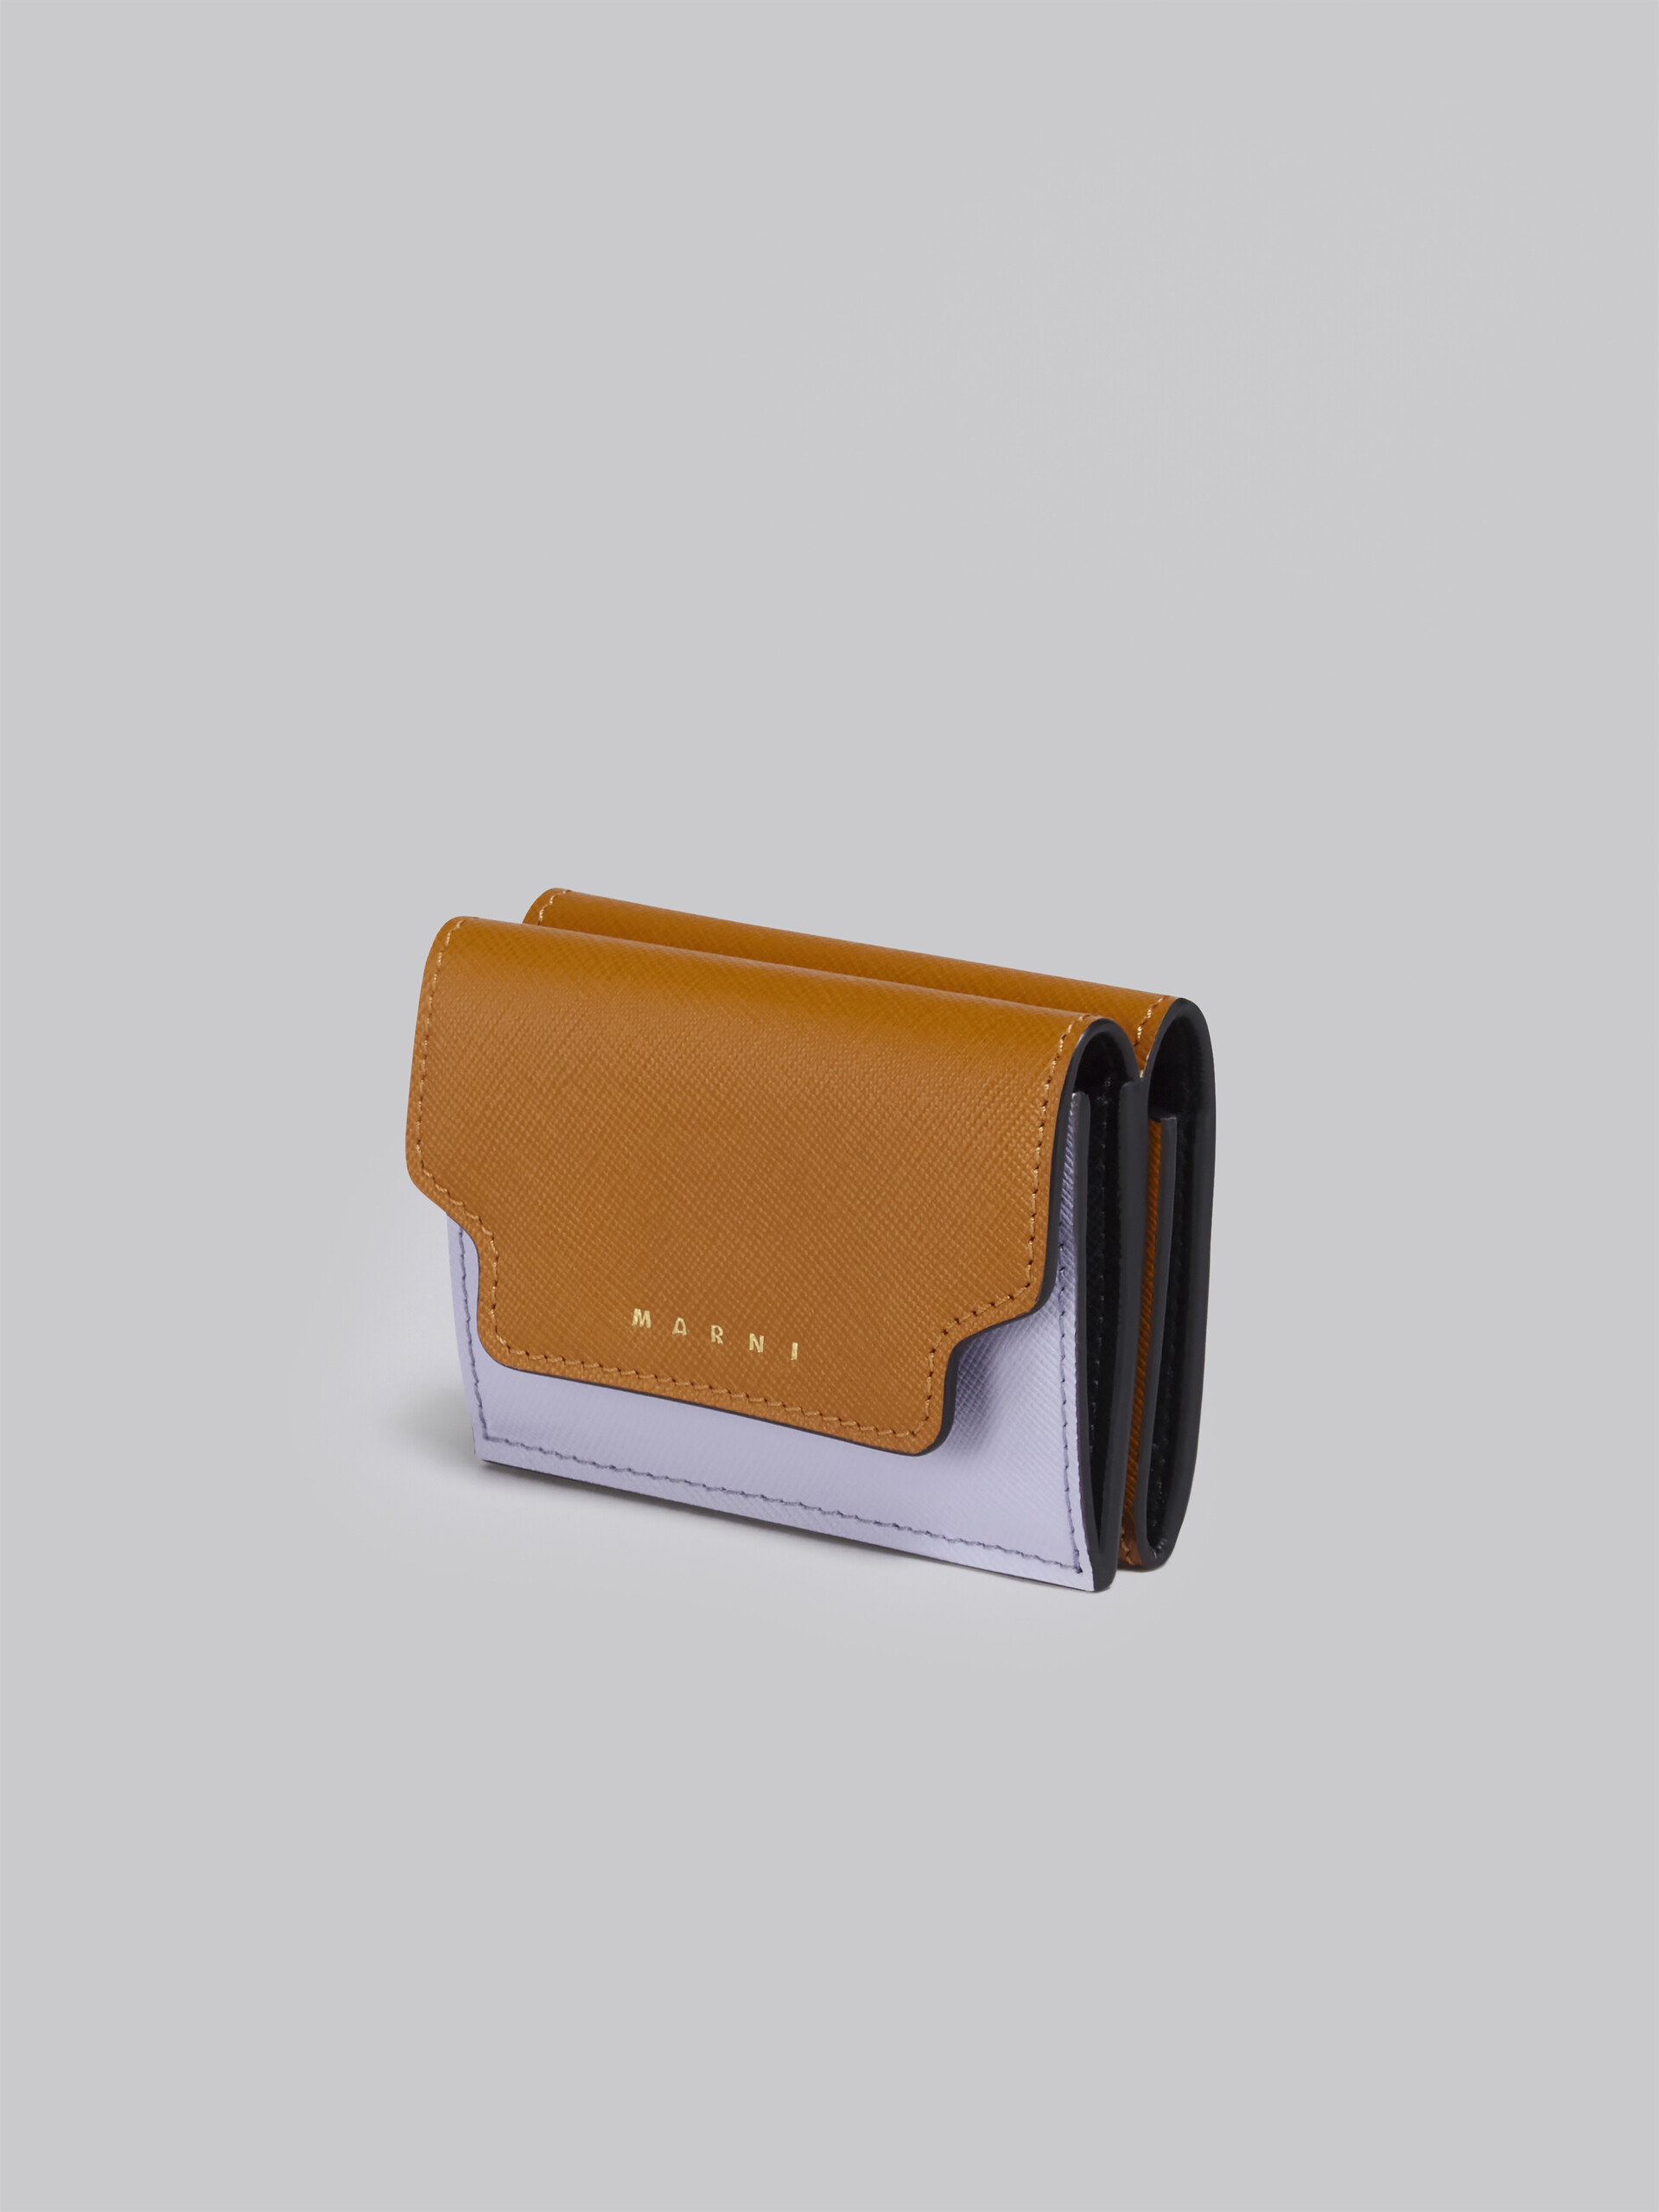 ブラウン ライラック・ブラック サフィアーノレザー製 三つ折りウォレット - 財布 - Image 4